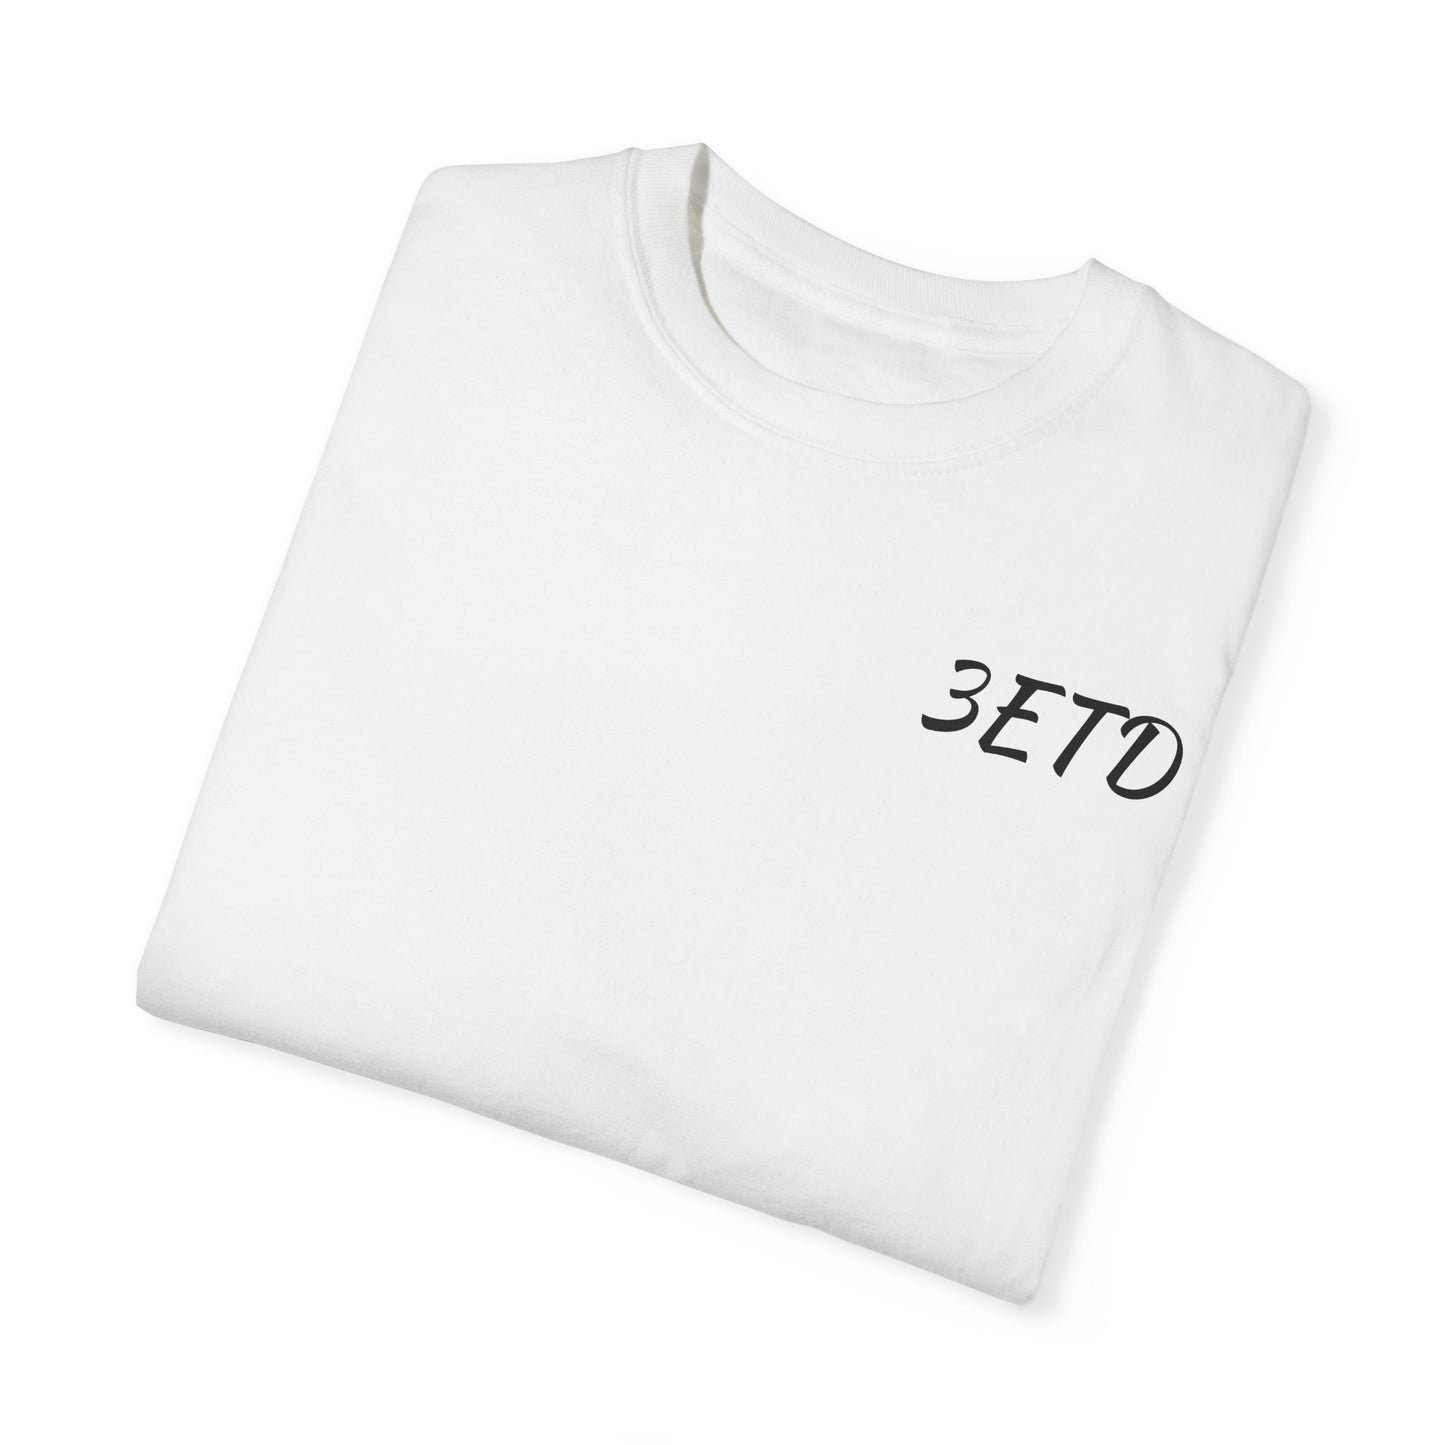 Men's 3ETD Logo Prt T Shirt